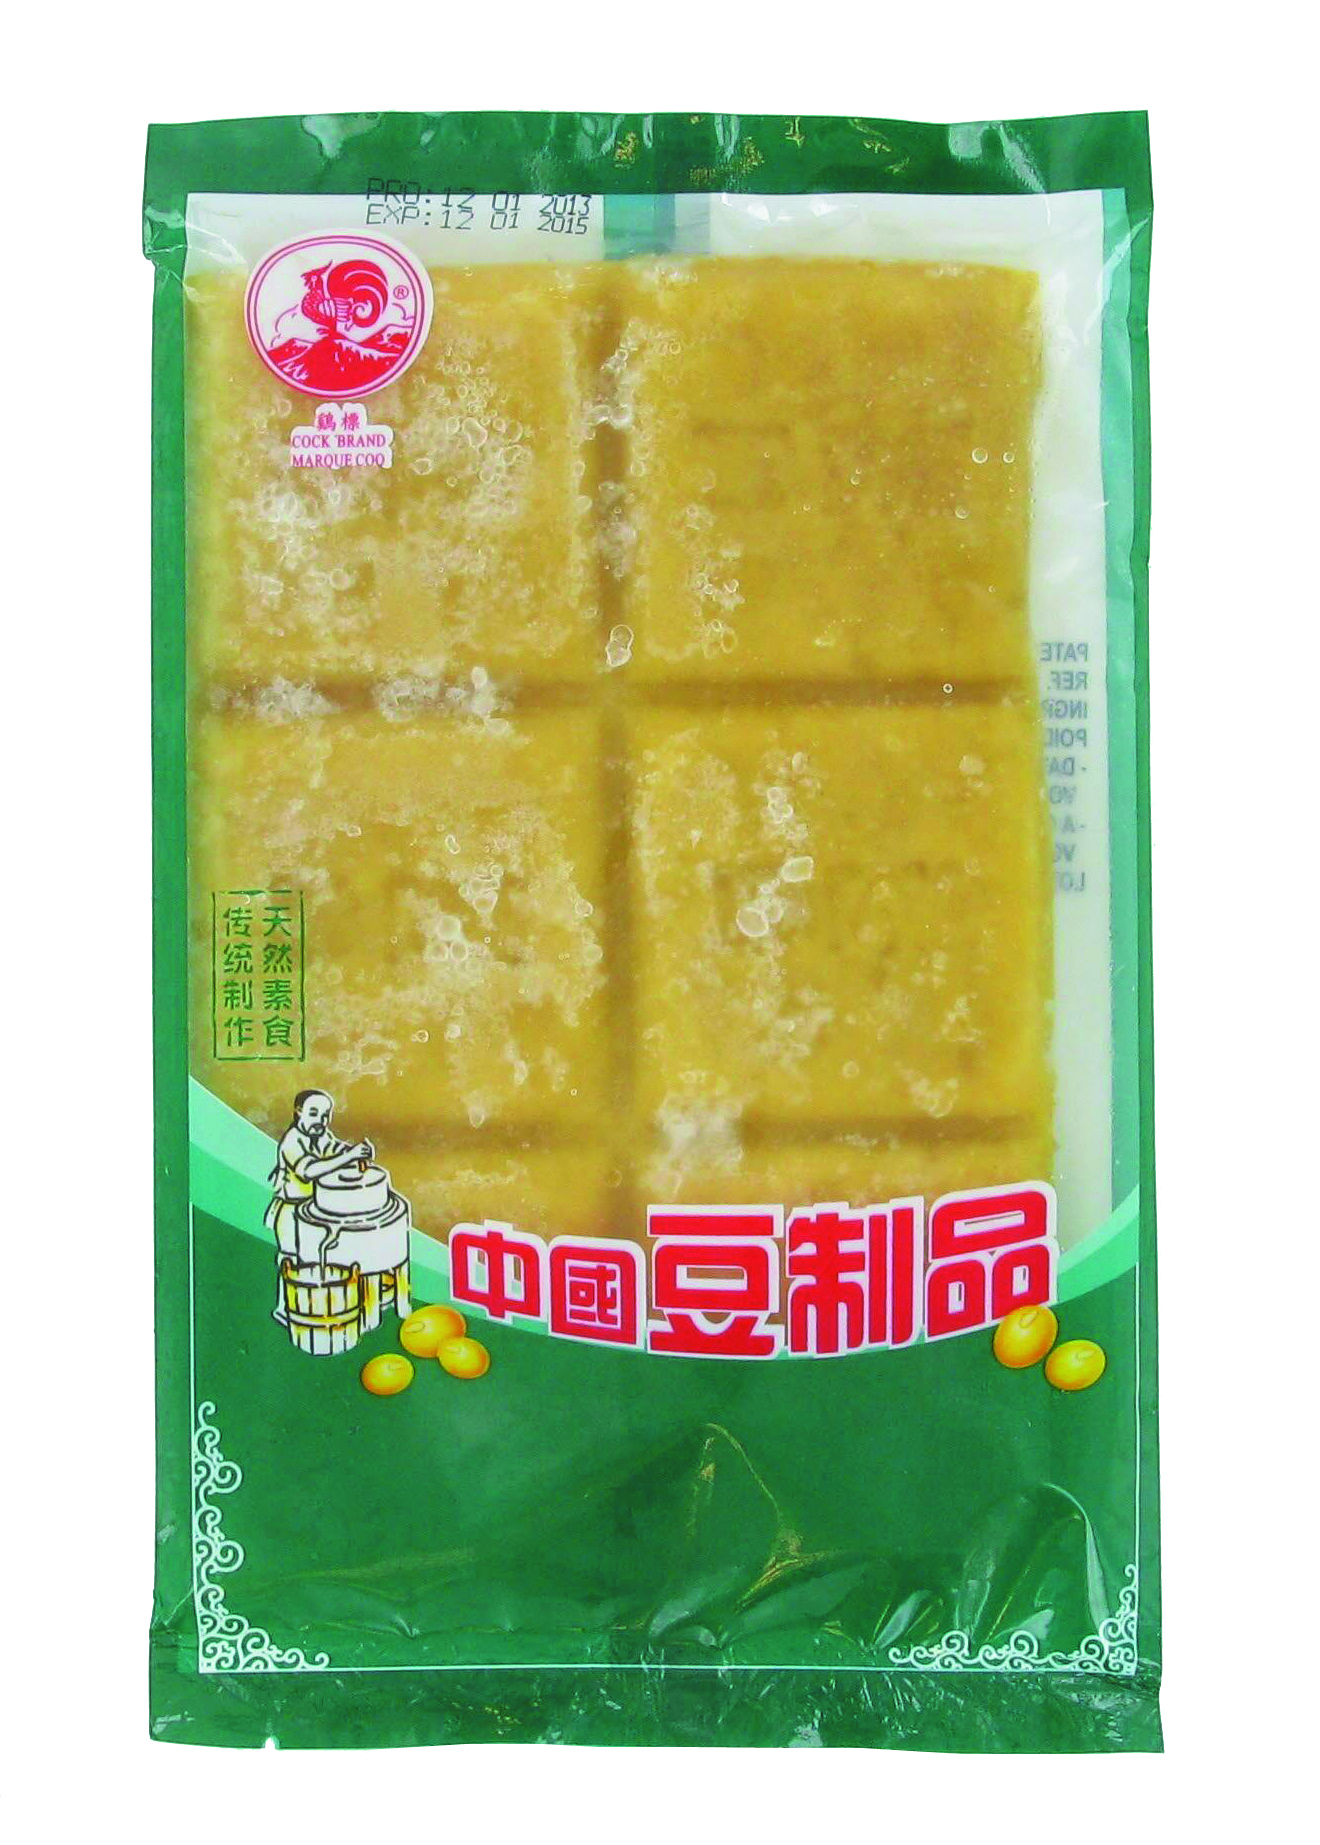 Gluten de blé (烤麸) COCK - Surgelés, Dérivés de riz, blé et soja - Tang  Frères